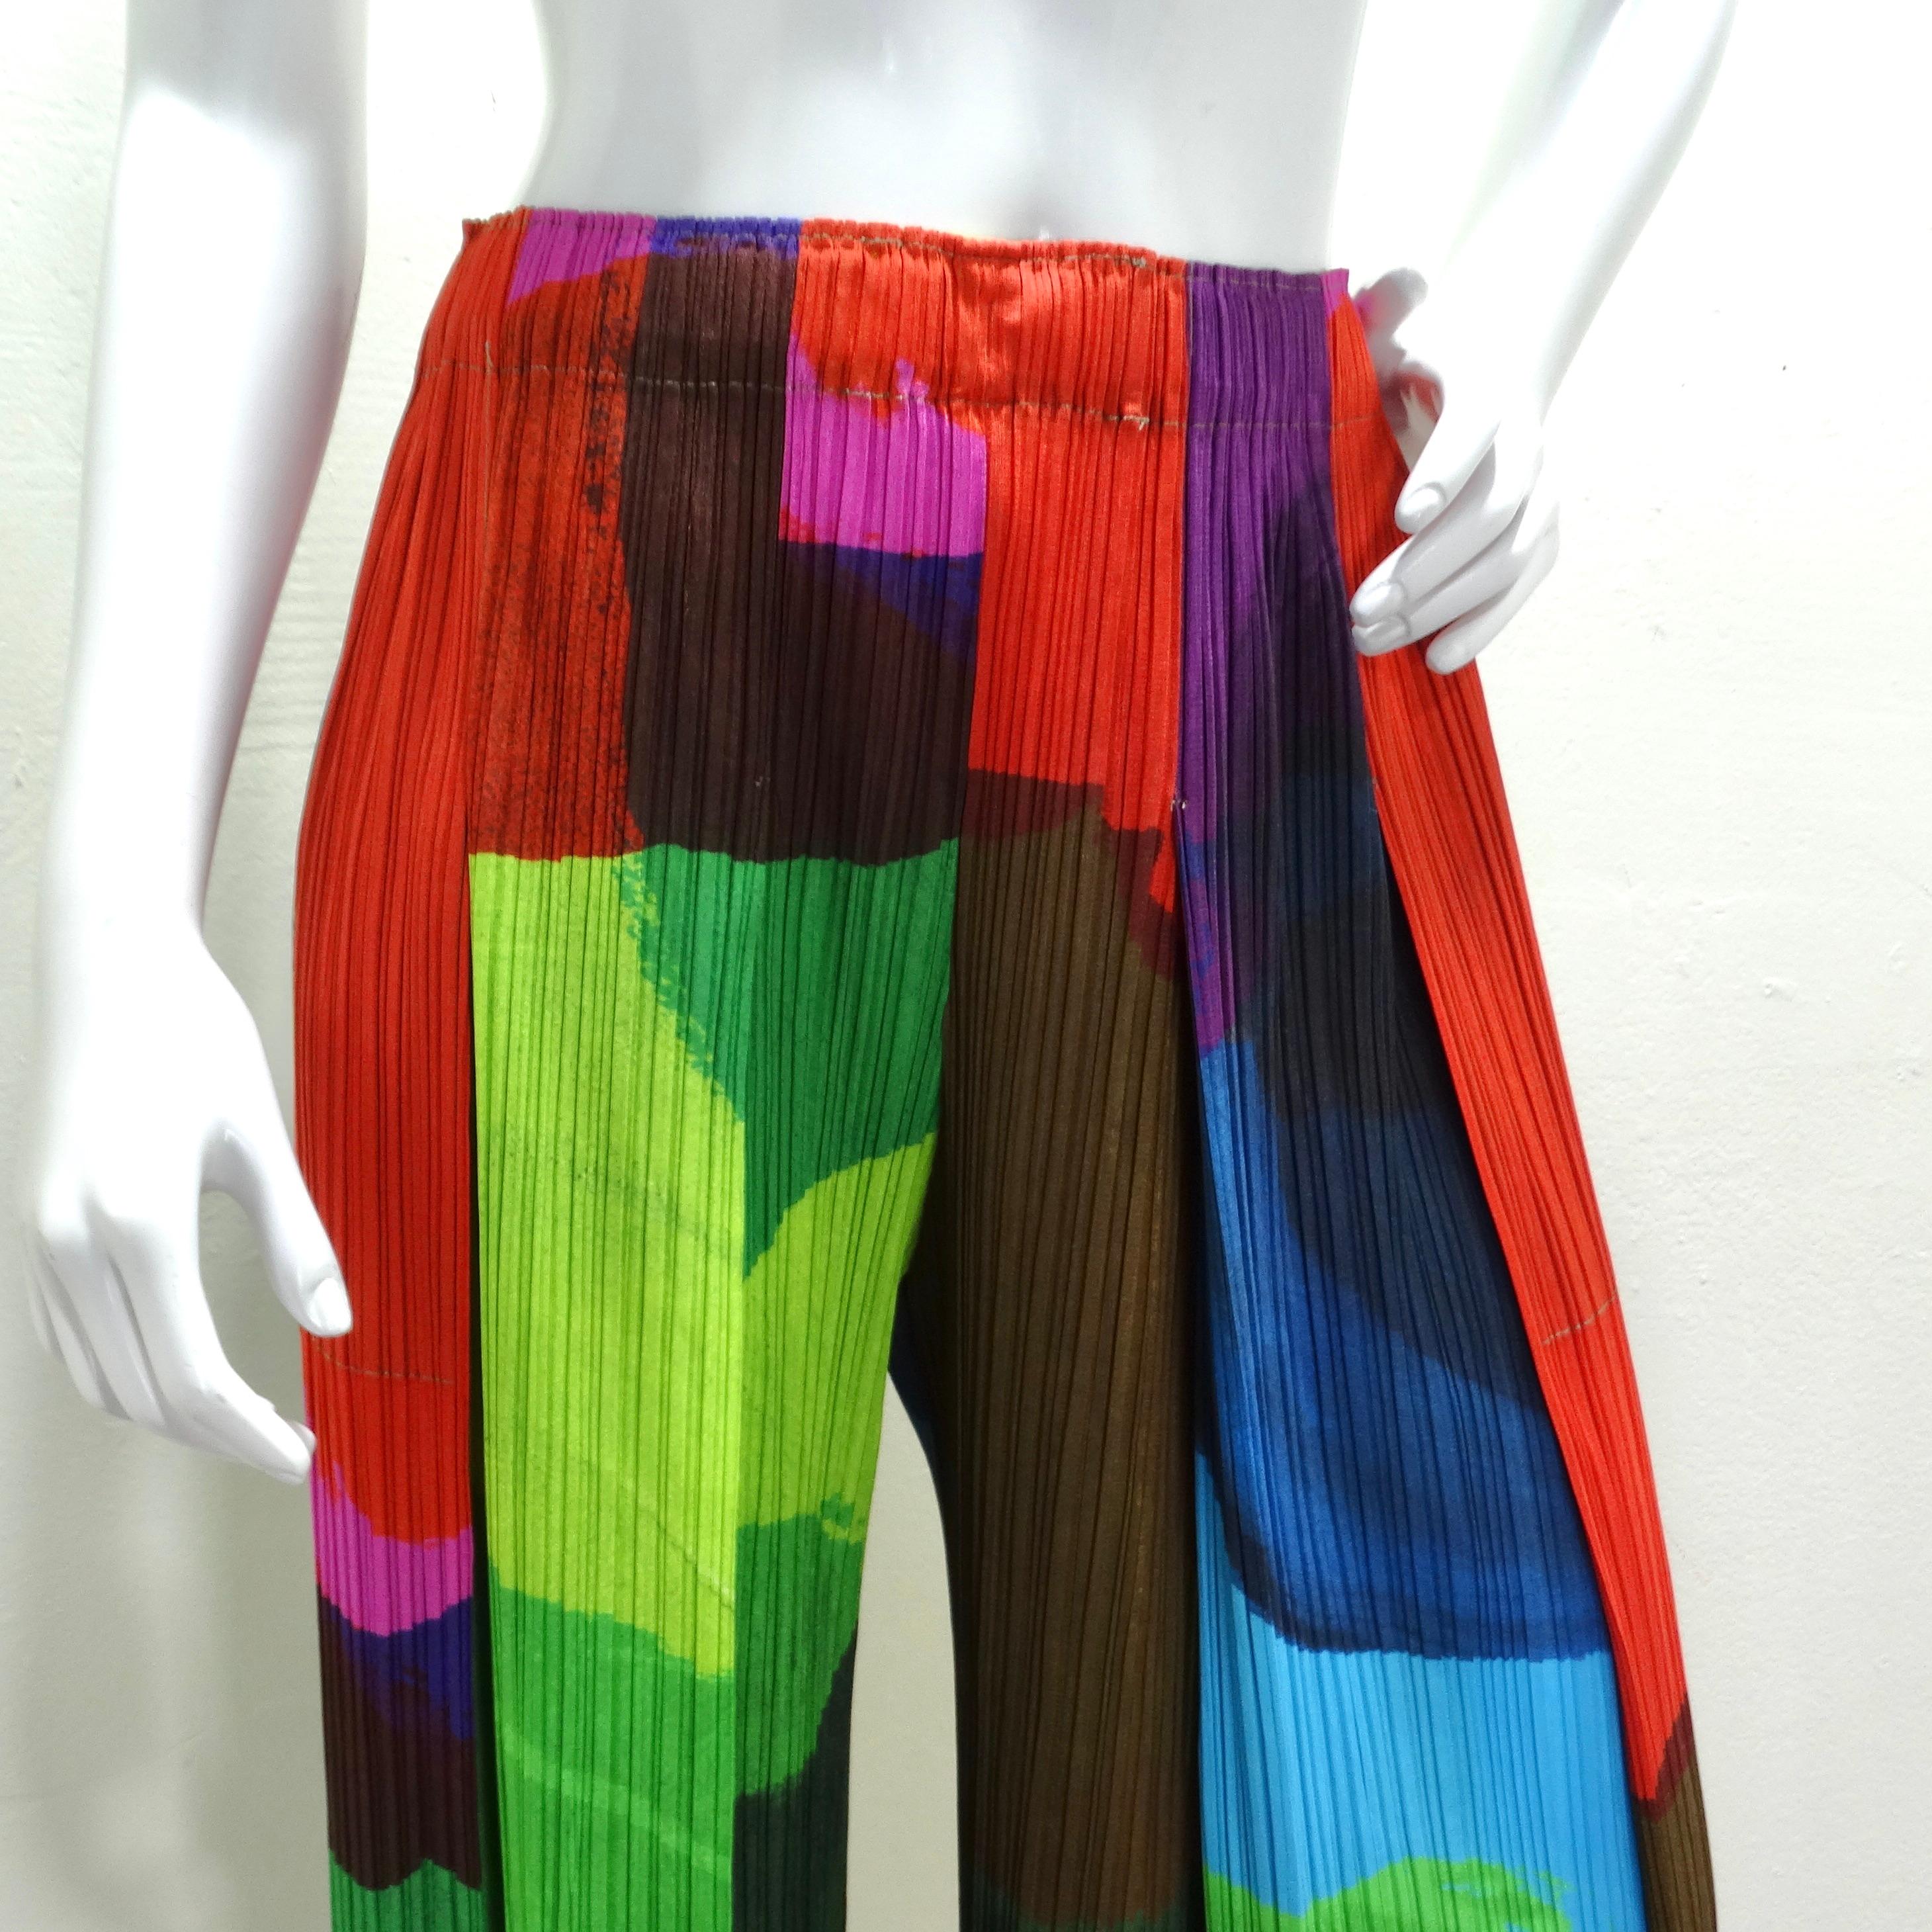 Le pantalon Pleats Please Multicolor d'Issey Miyake pour les années 1990 est une représentation vibrante et emblématique de la ligne Pleats Please, mettant en valeur la technique de plissage innovante du créateur et son utilisation créative de la